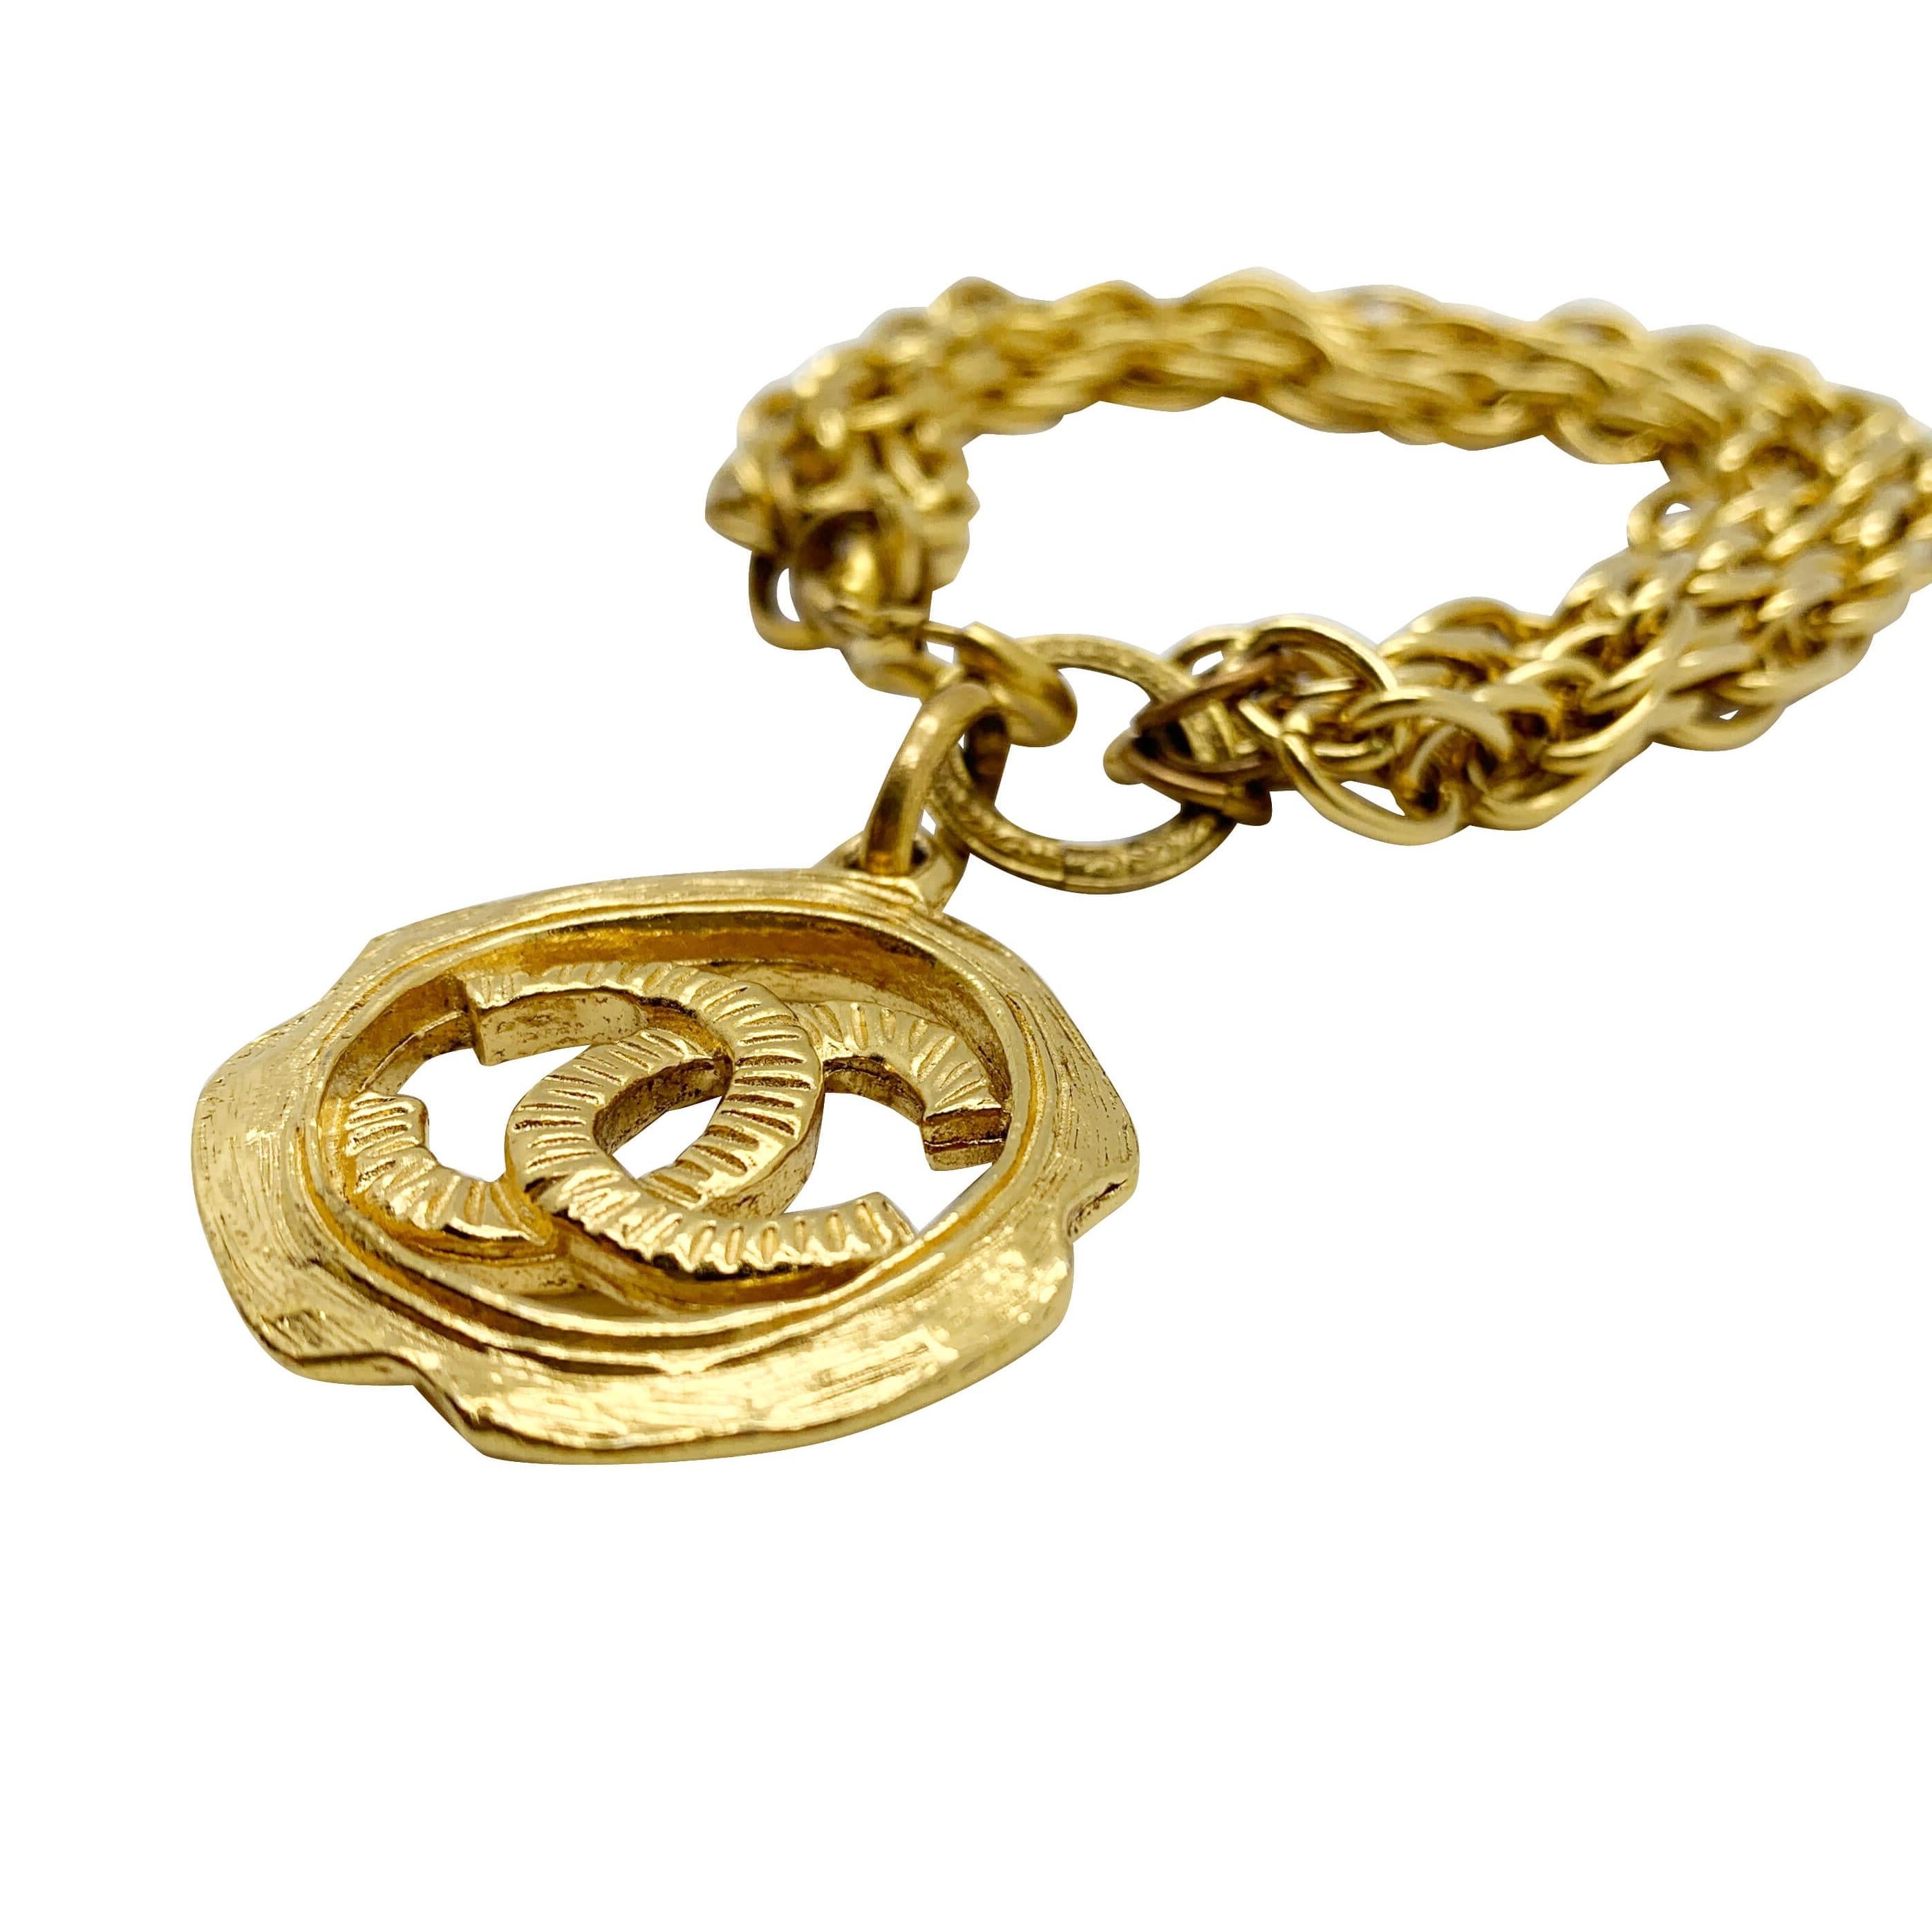 Unser Vintage Chanel Logo Charm-Armband. Ein atemberaubendes Armband mit Charme aus dem Hause Chanel, das an die glamourösen 1980er Jahre und die inzwischen legendäre Ära von Karl Lagerfeld und Victoire de Castellane erinnert. Das große,